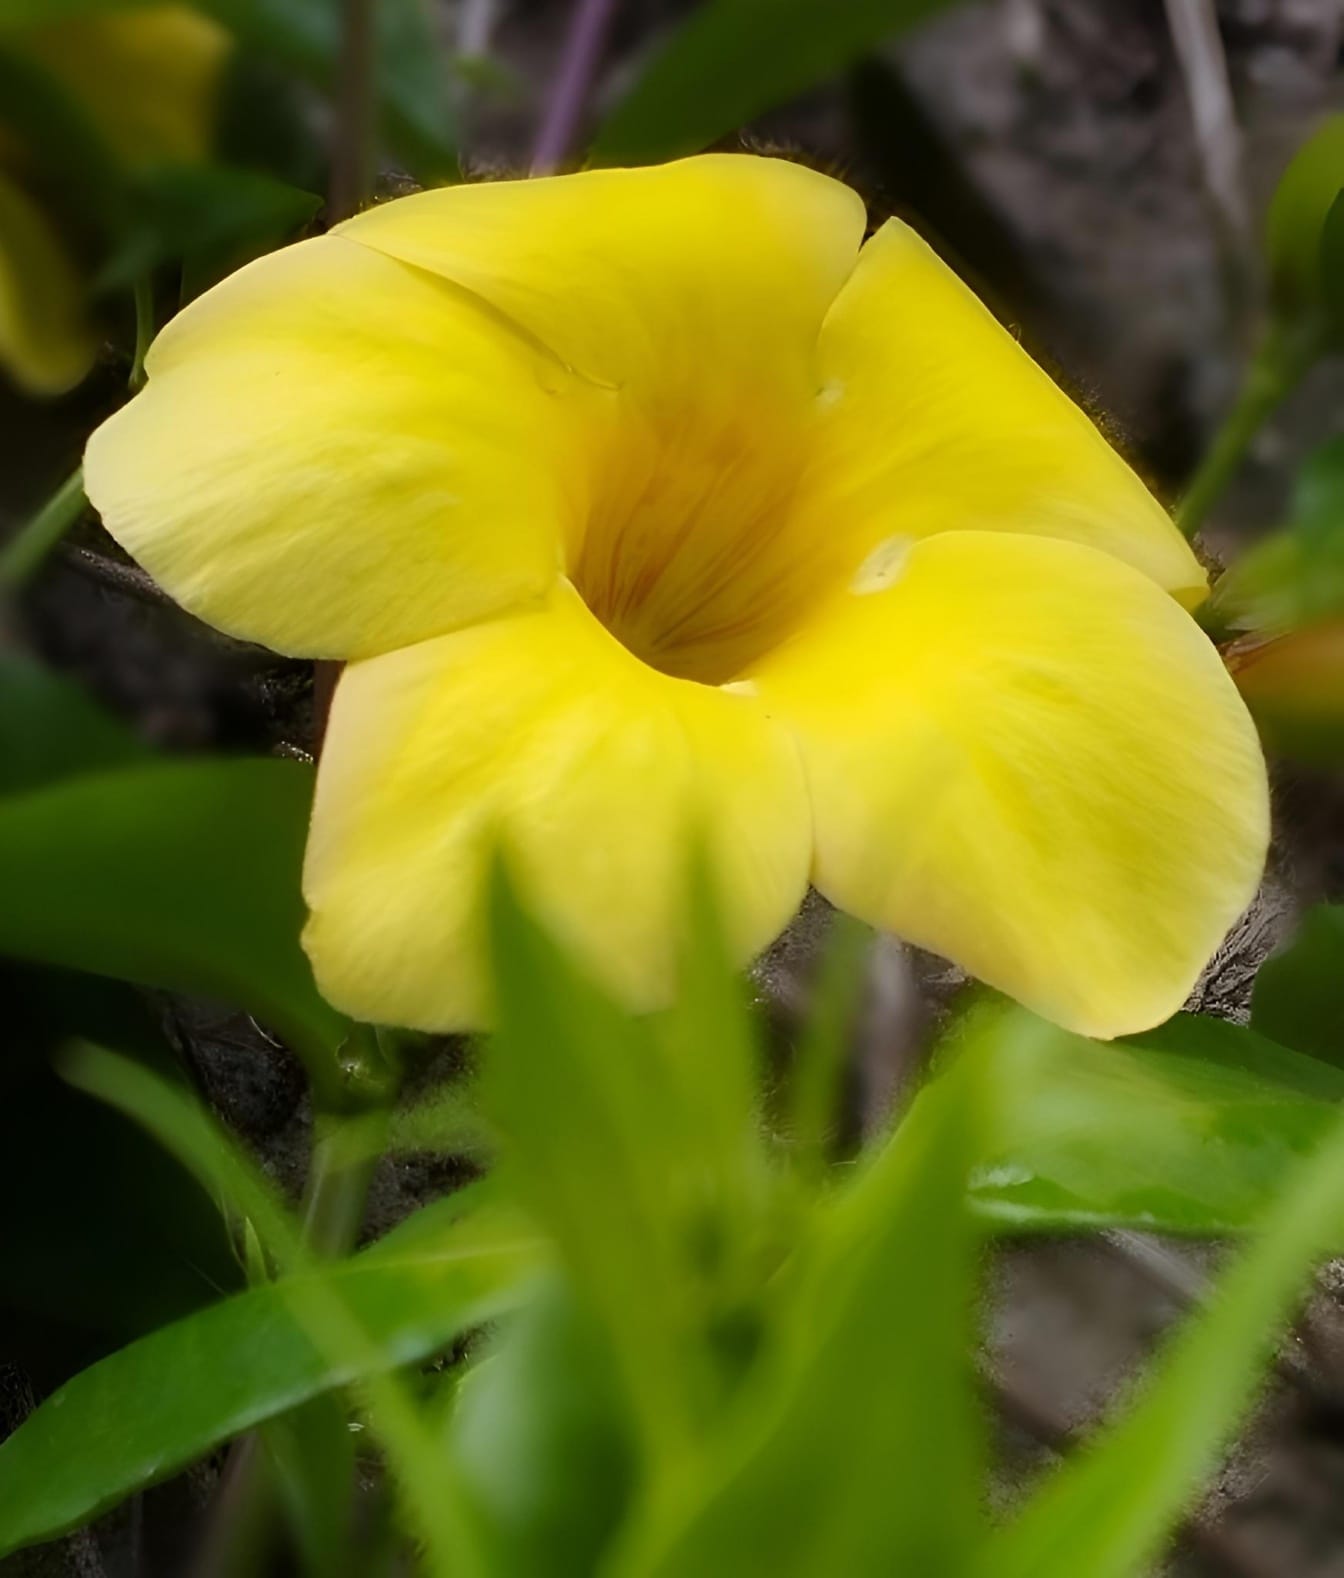 Hoa màu vàng với lá màu xanh lá cây được gọi là bụi cây Allamanda (Allamanda schottii)